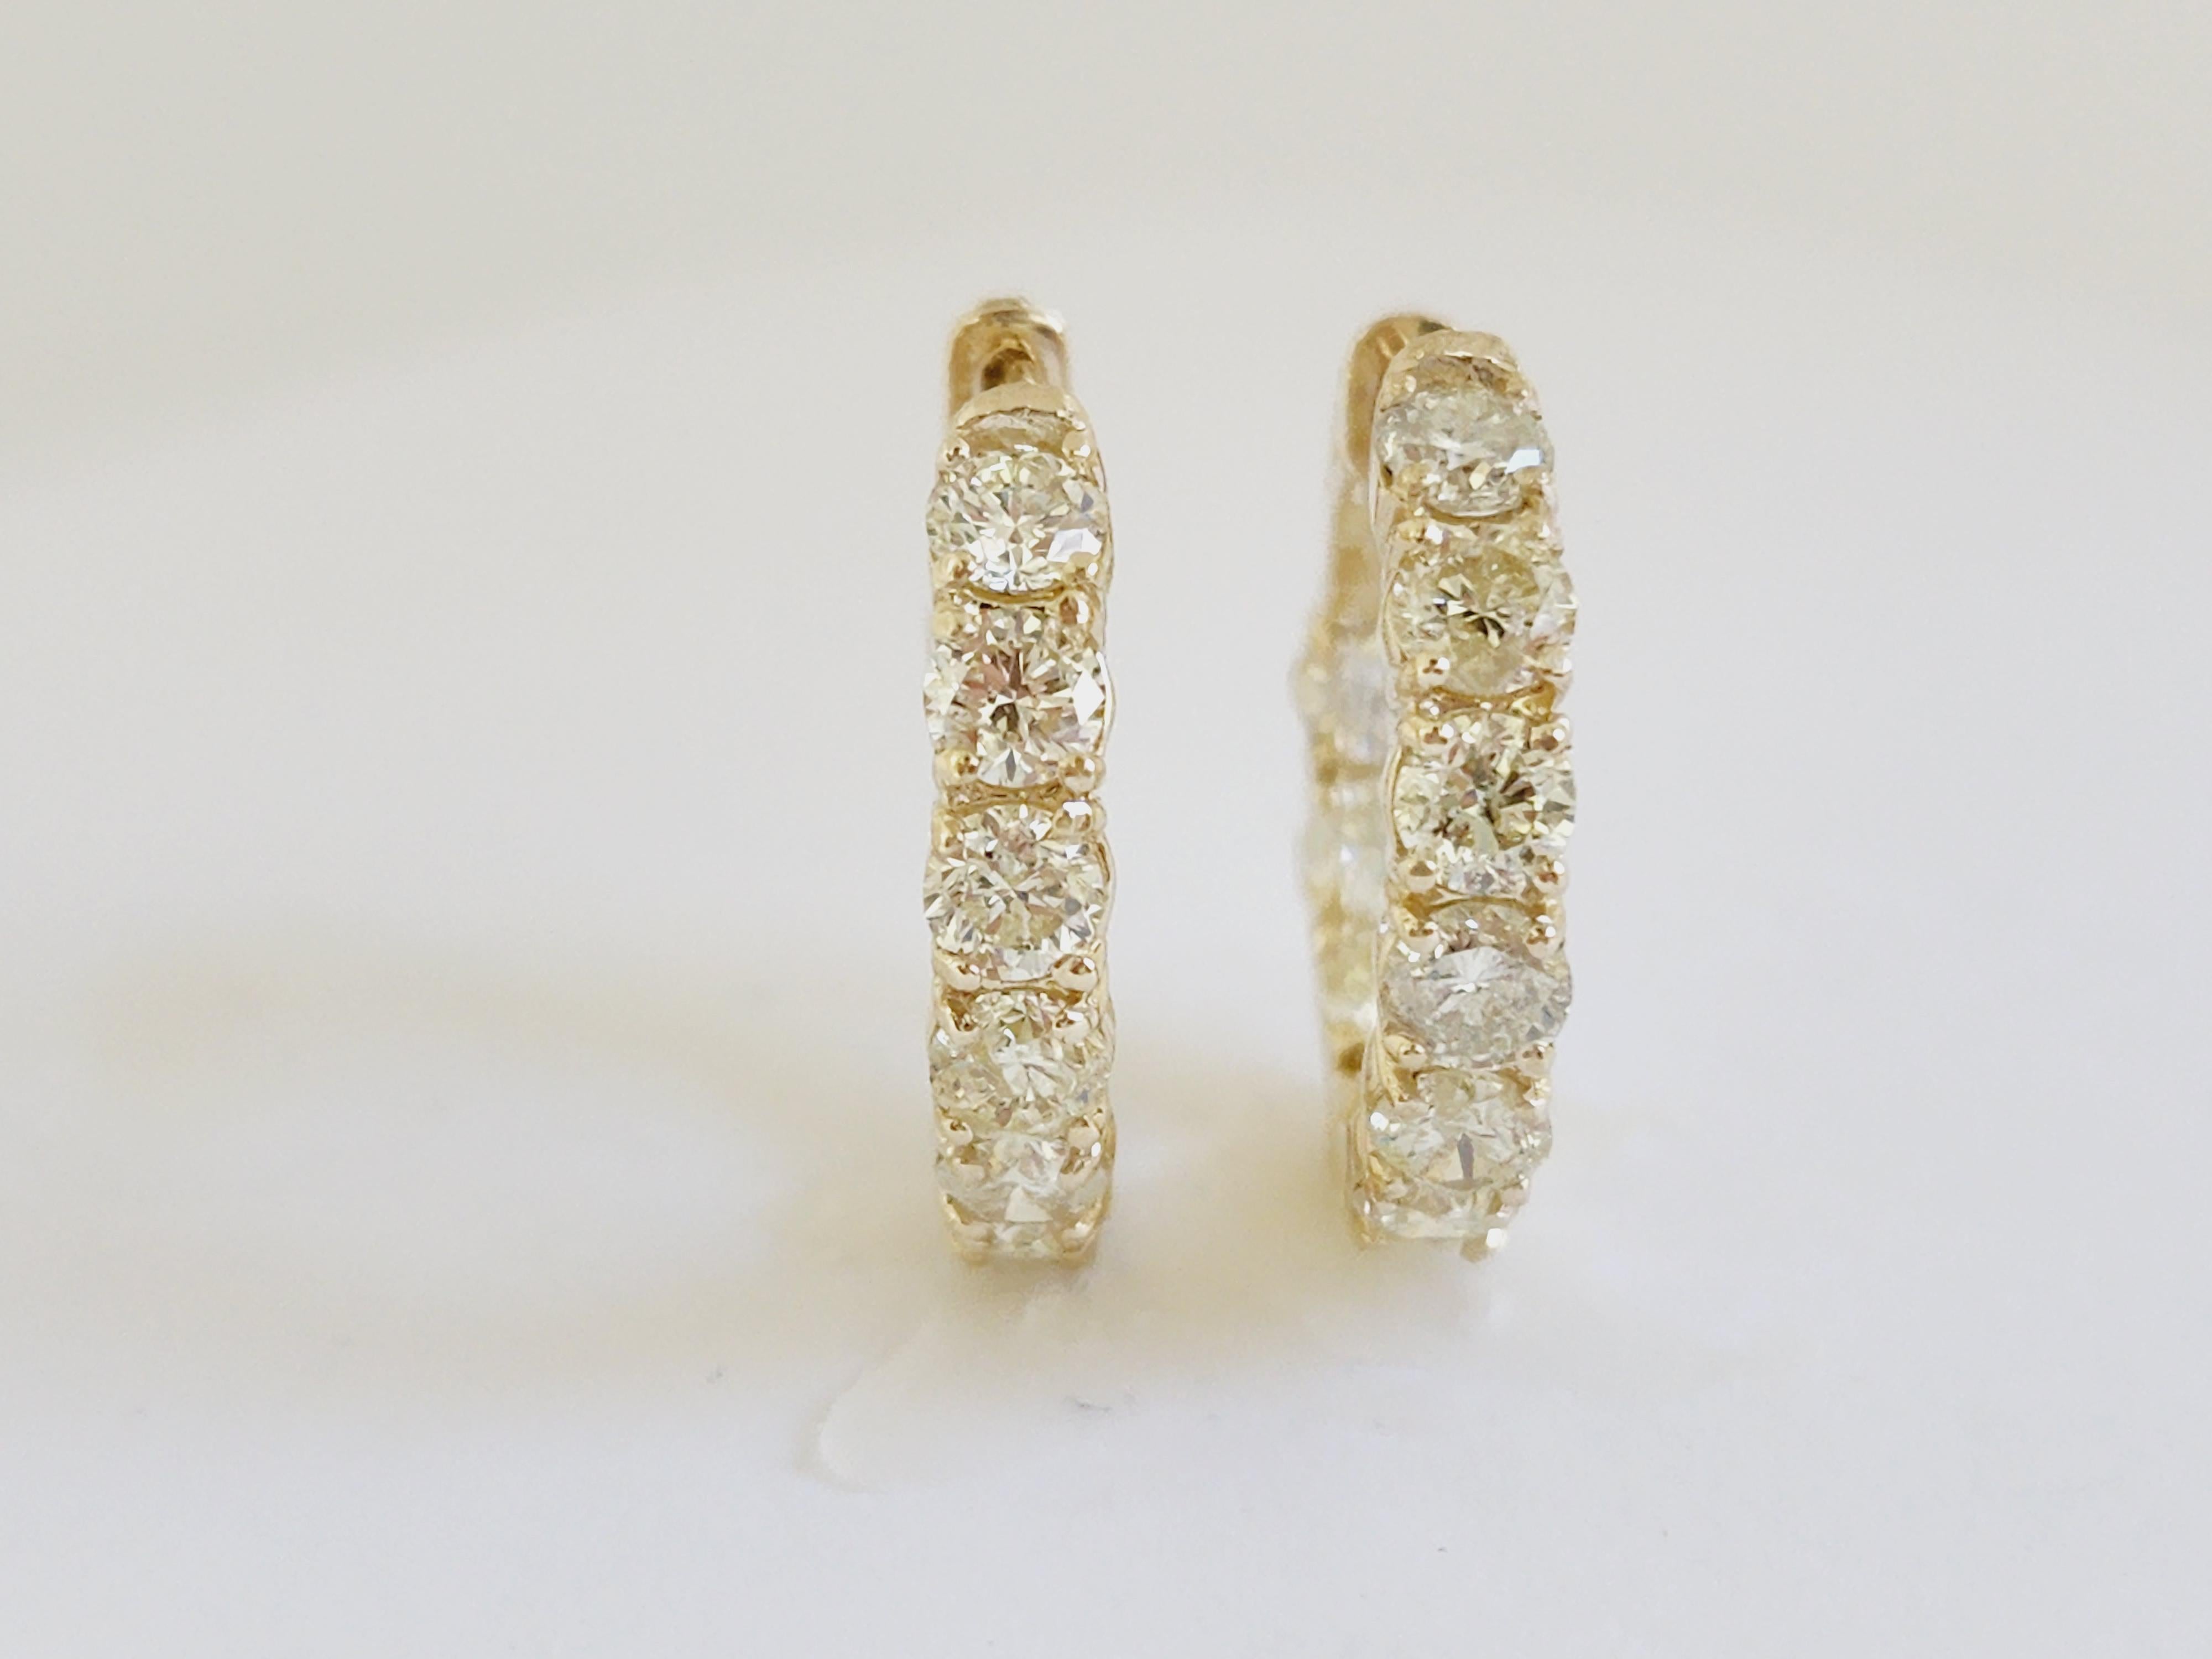 Wunderschönes Paar diamantener Huggie-Reifen-Ohrringe aus 14k Gelbgold. Wird mit einem Druckknopfverschluss gesichert und getragen. Eleganz für jeden Augenblick. Stil von innen nach außen
Durchschnittliche Farbe I-J, Reinheit VS-SI, 
Misst 0,75 Zoll